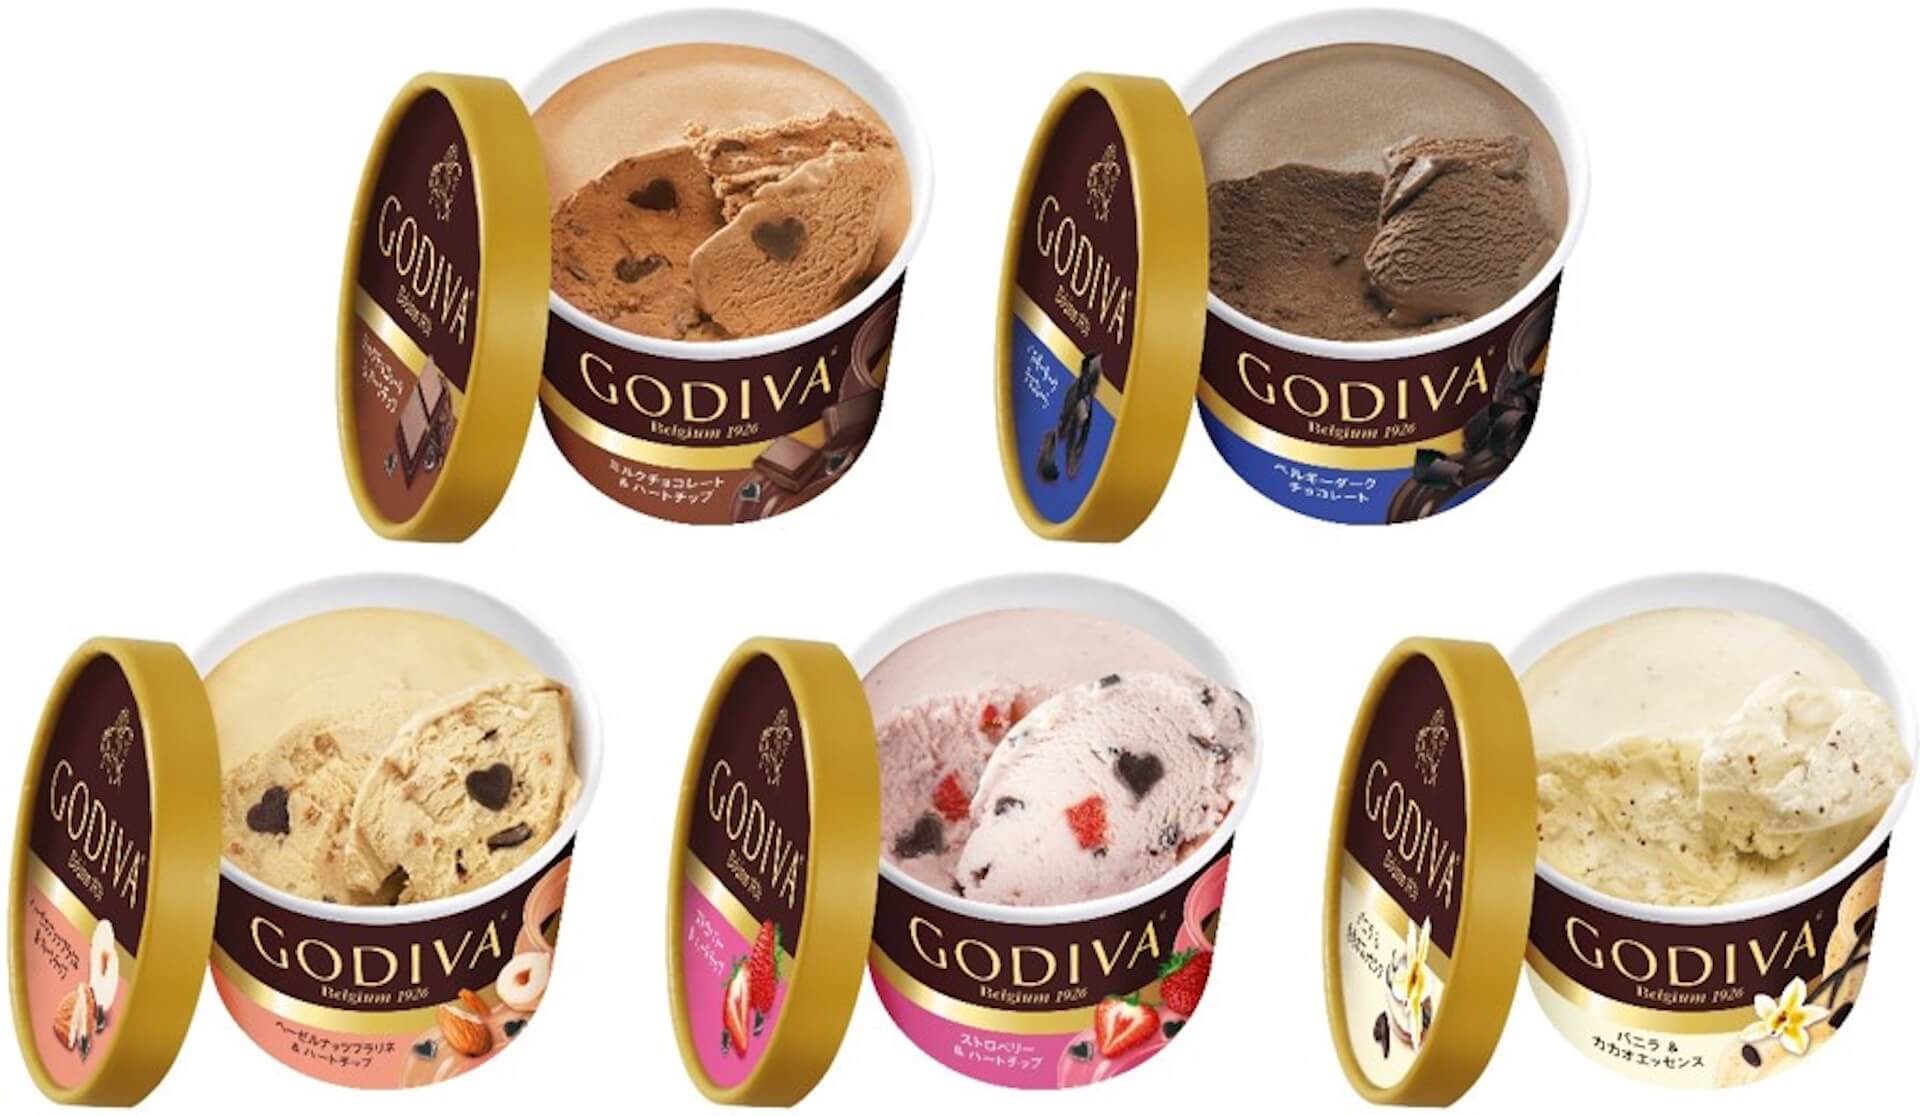 おうちで気軽にゴディバのチョコレートが楽しめる！ゴディバ『カップアイス』から新たなフレーバー5種類が登場 gourmet20201019_godiva_1